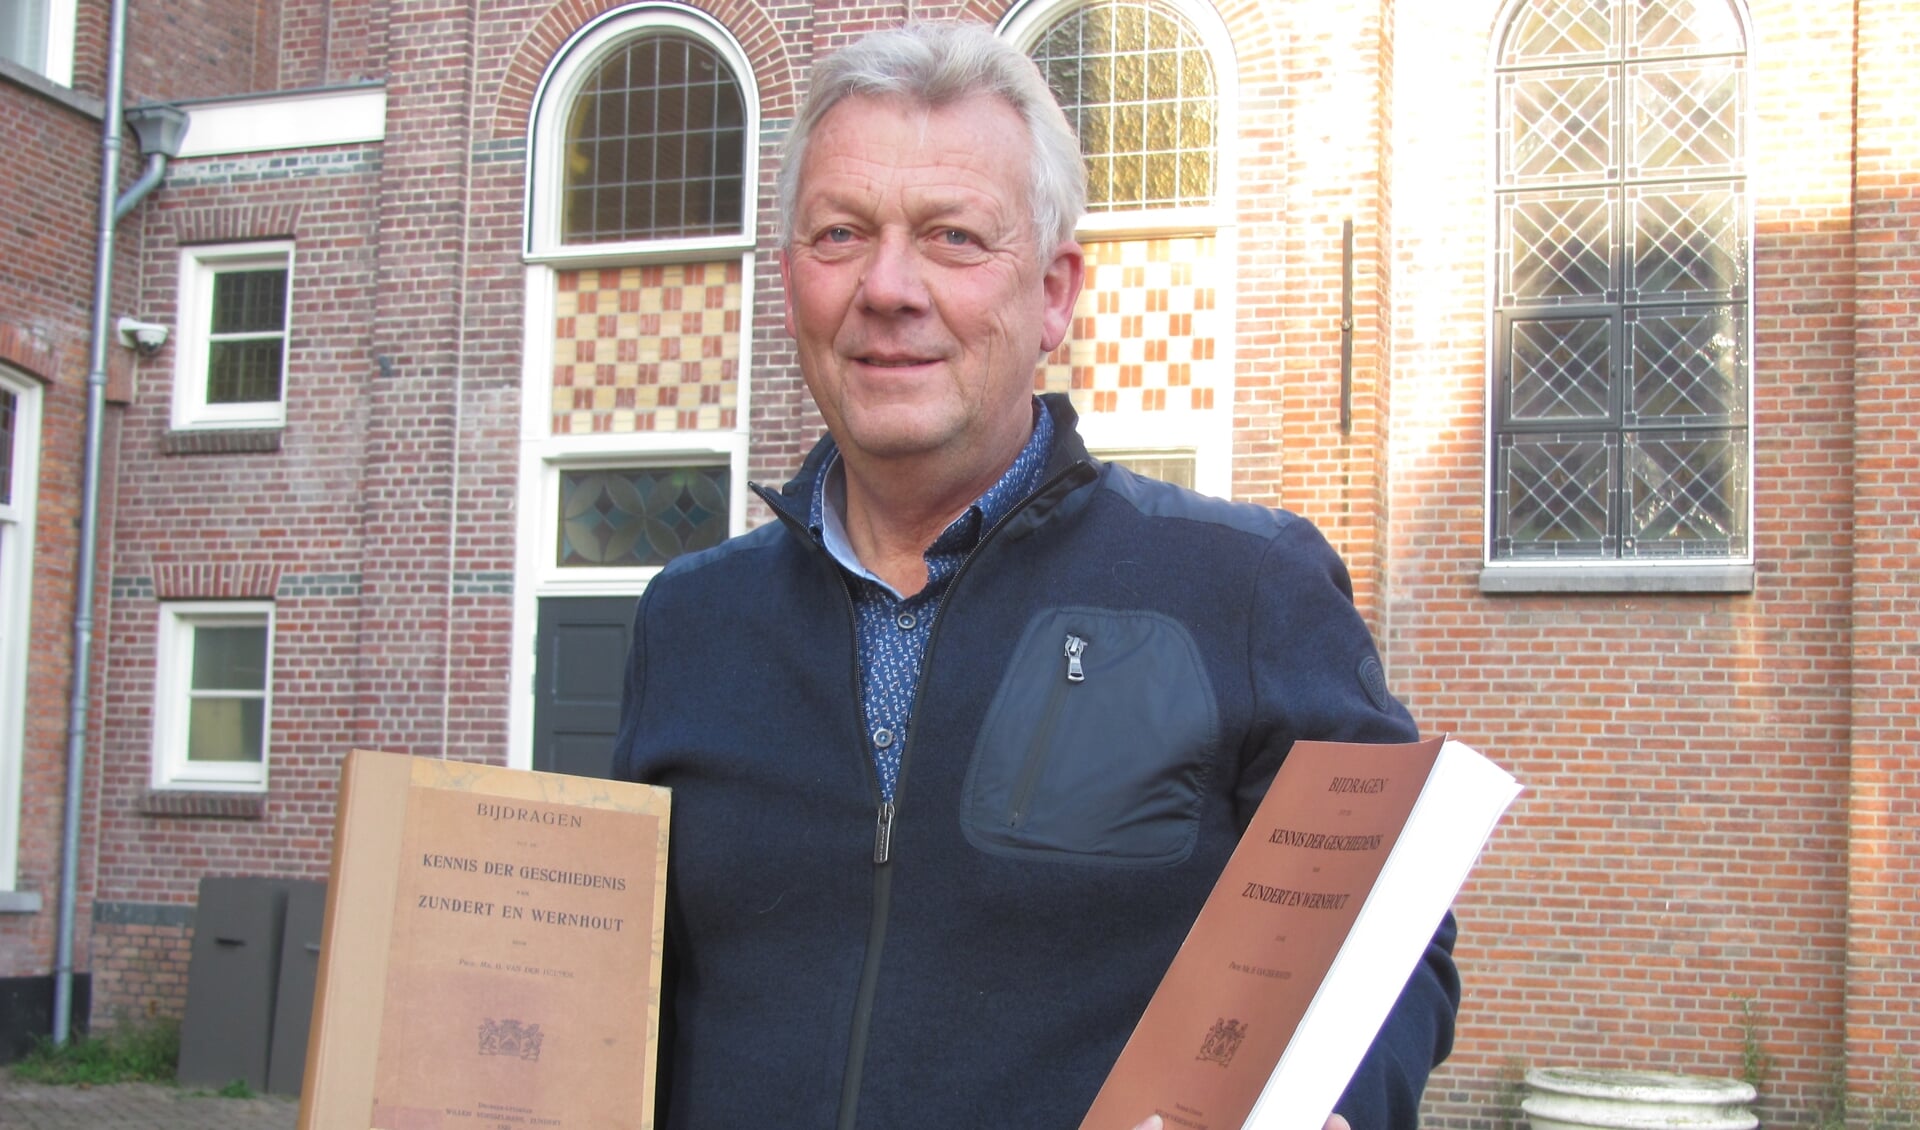 Toon van den Berg met het originele exemplaar van het boek over de historie van Zundert en Wernhout  (links) en een dummy van de heruitgave (rechts). 